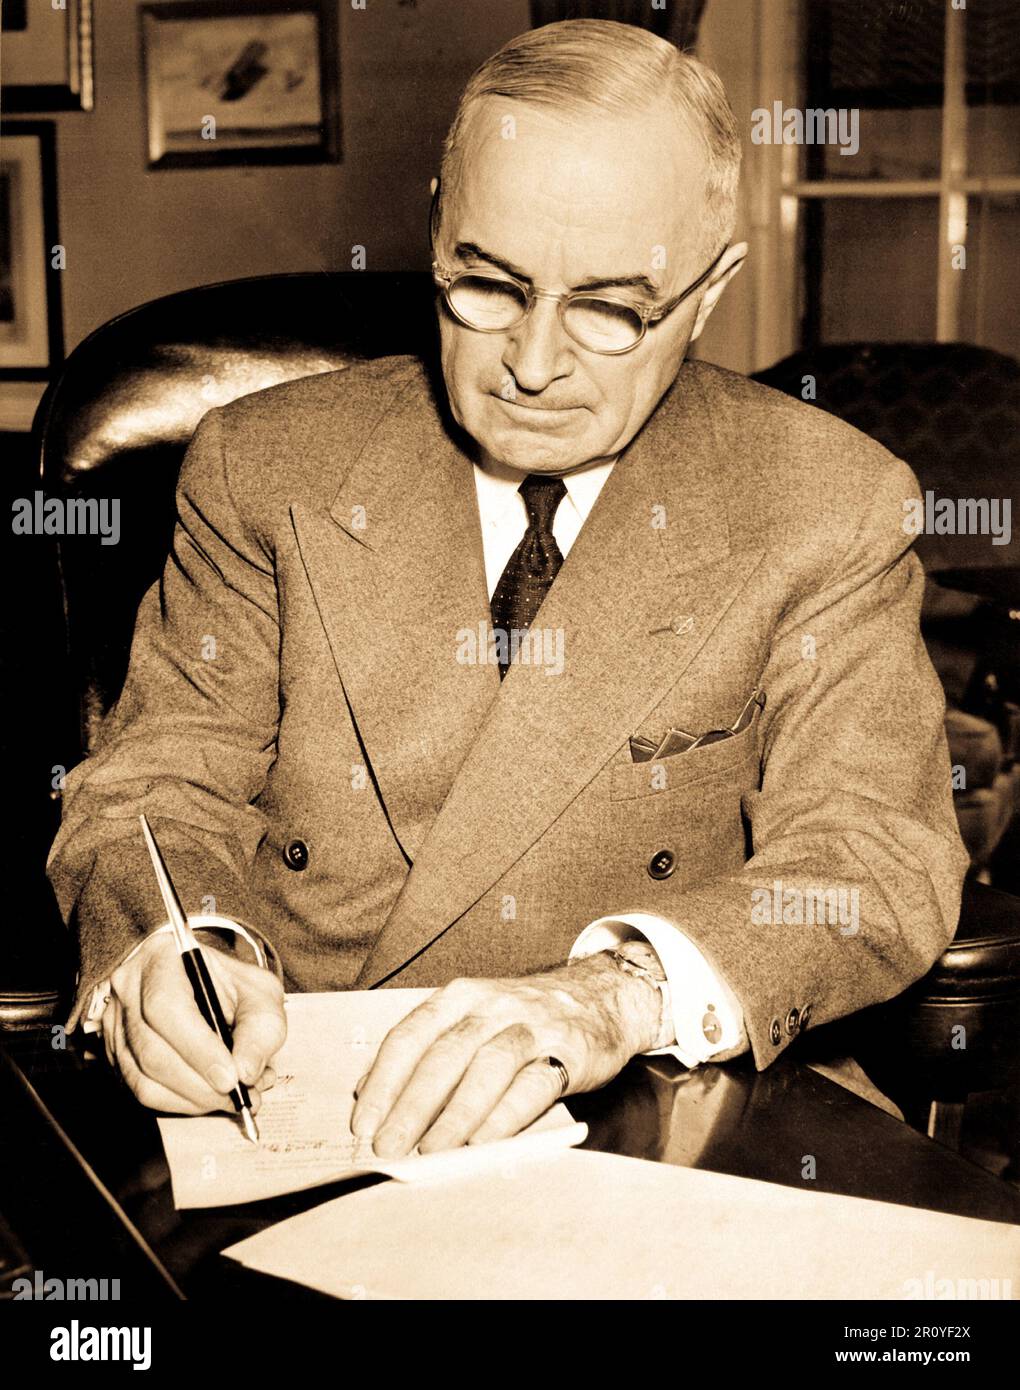 Präsident Harry S. Truman ist an seinem Schreibtisch im Weißen Haus gezeigt Unterzeichnung eine Proklamation, die einen nationalen Notstand zu erklären.  16. Dezember 1950. Stockfoto